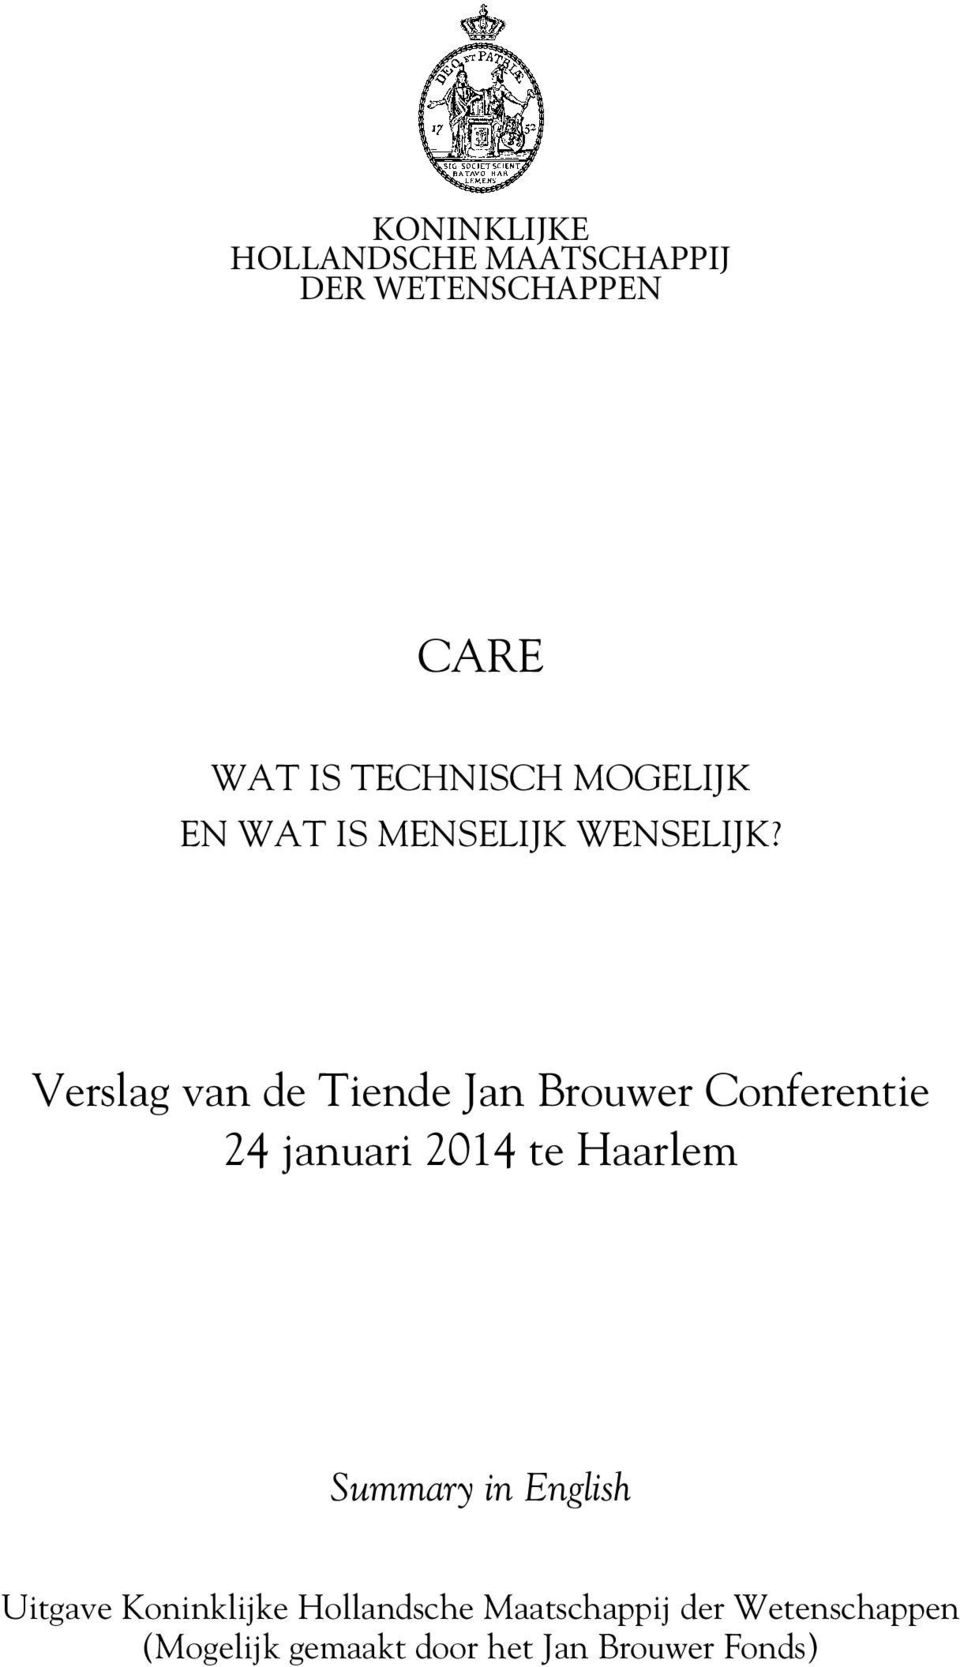 Verslag van de Tiende Jan Brouwer Conferentie 24 januari 2014 te Haarlem